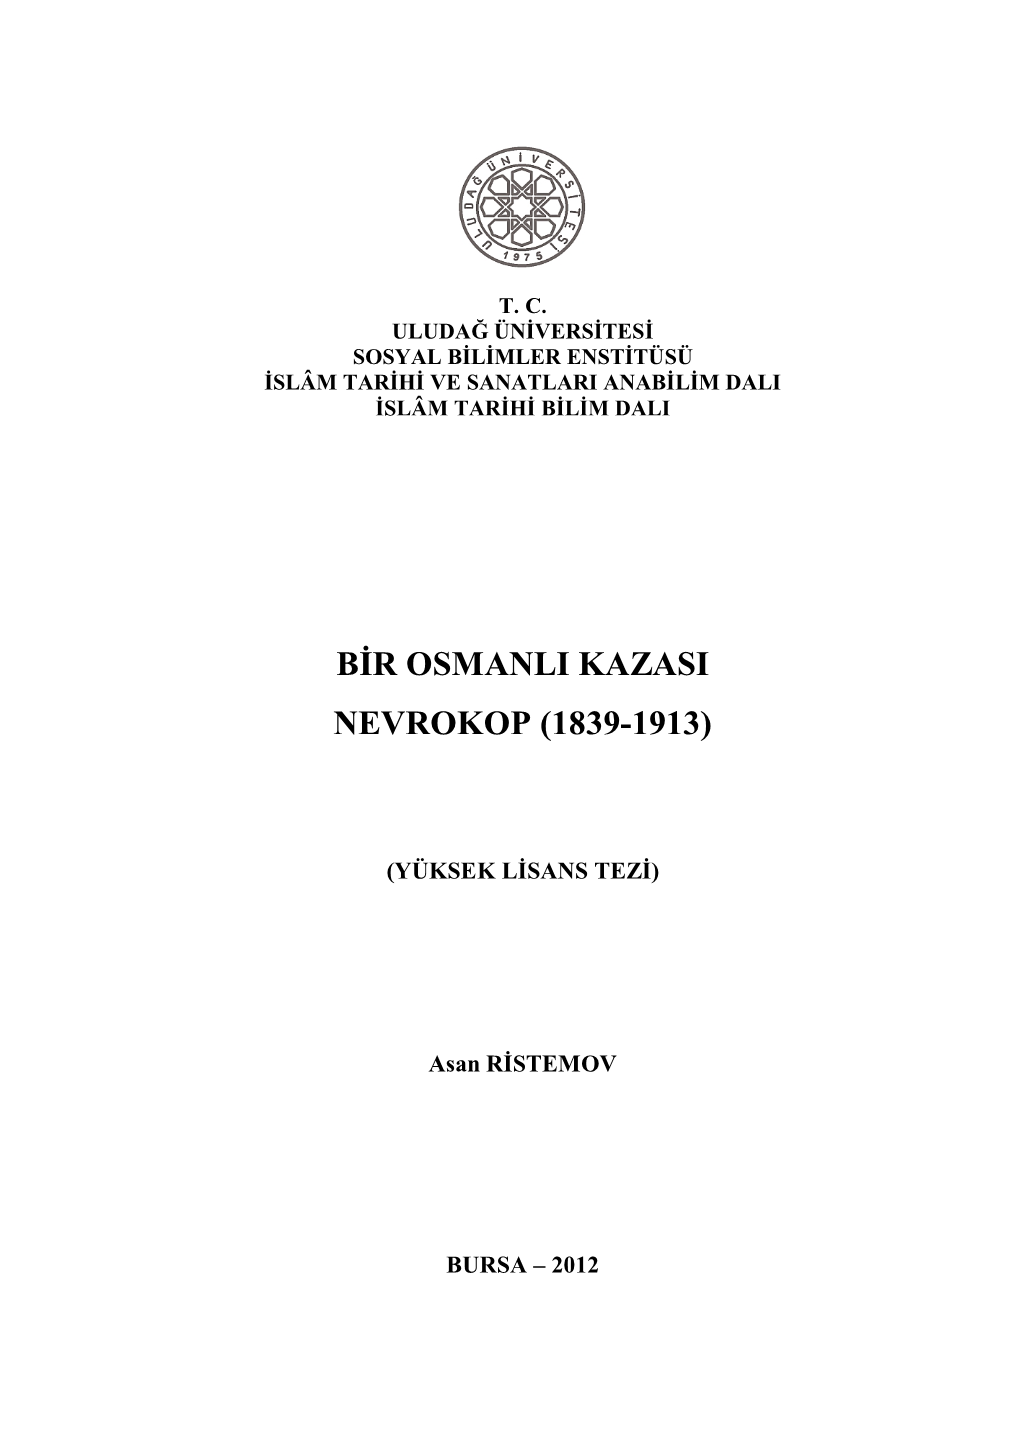 Bir Osmanli Kazasi Nevrokop (1839-1913)